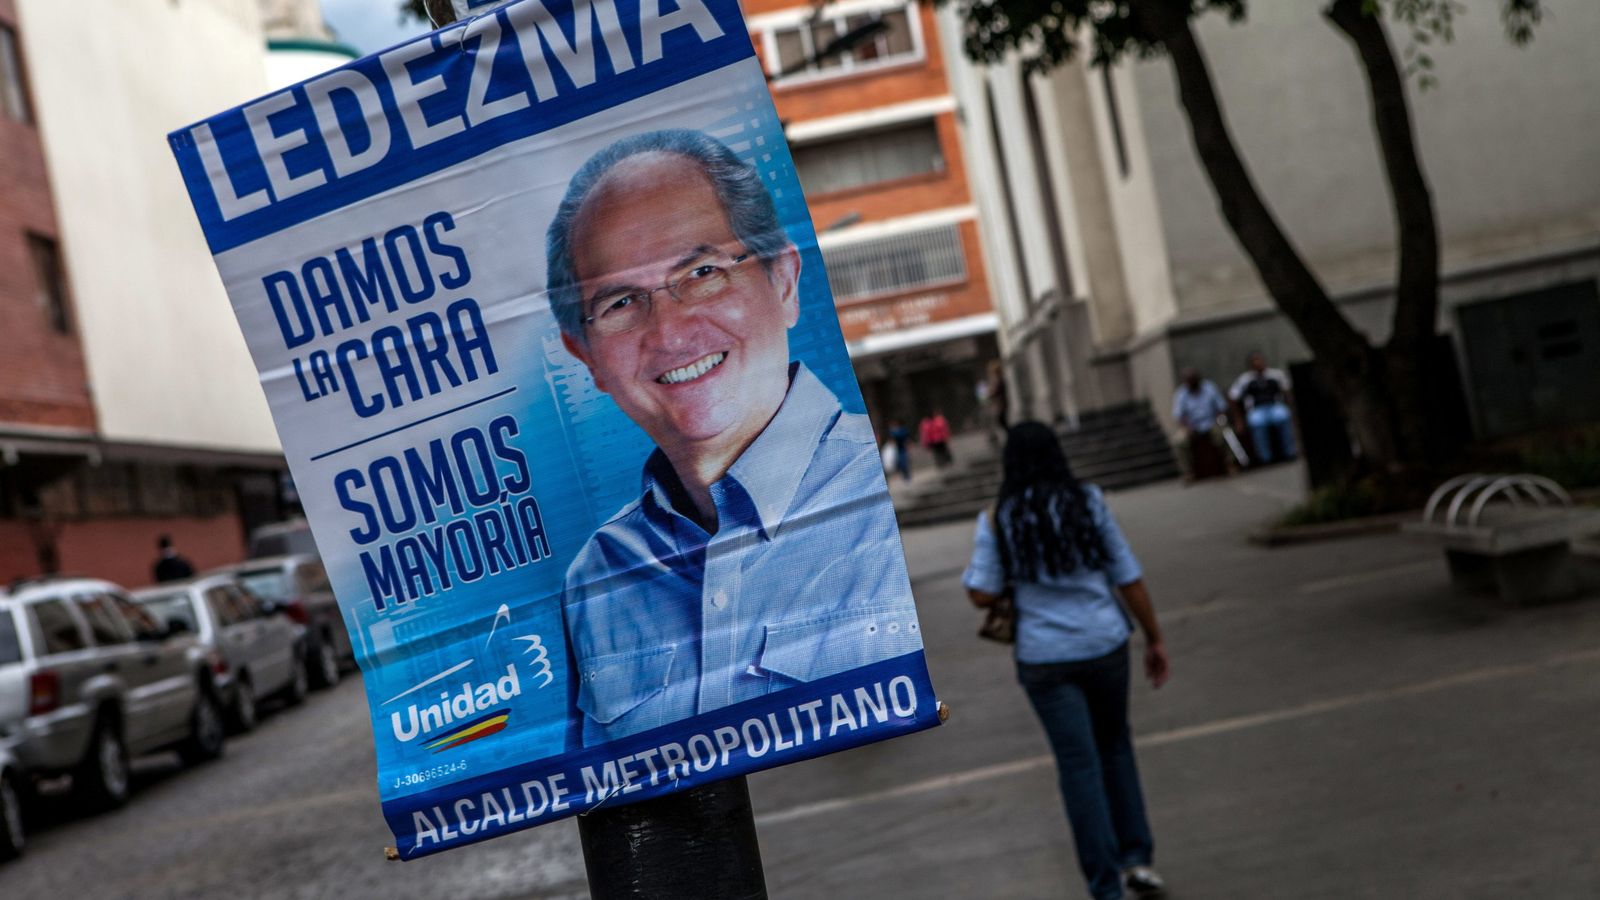 Foto: Propaganda electoral del candidato oficialista a la alcaldía mayor Antonio Ledezma en 2013. (Efe)